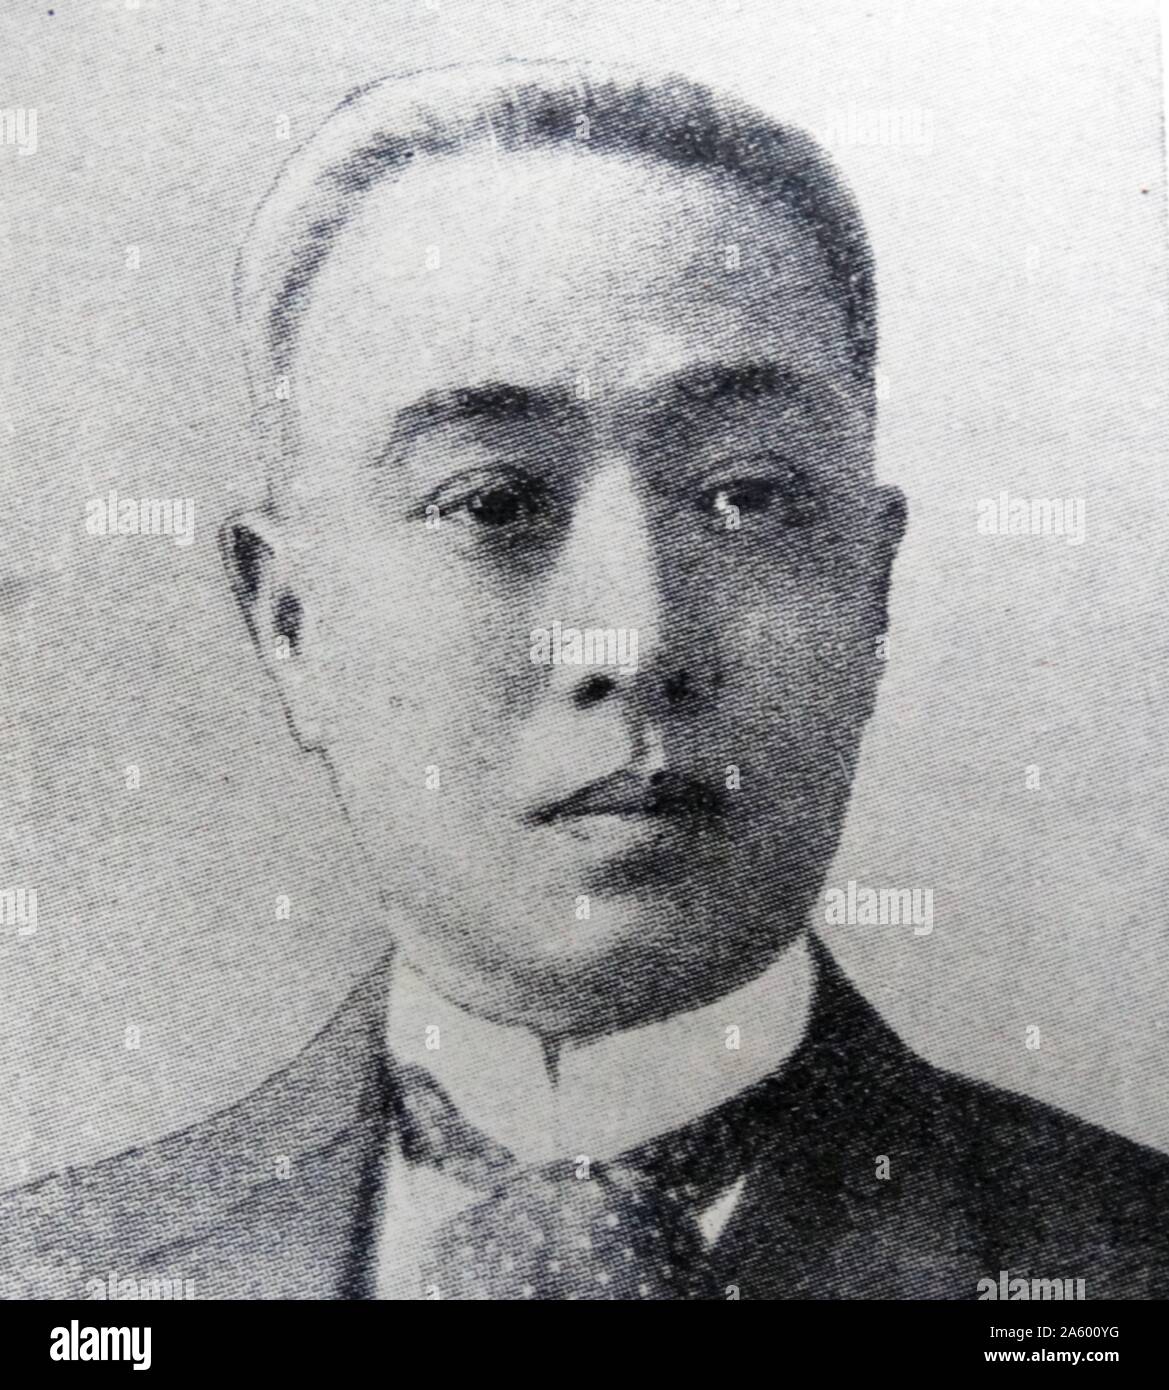 Fotografisches Porträt von Prinz Saionji Kinmochi (1849-1940), japanischer Politiker, Staatsmann und zweimal Premierminister von Japan. Vom 20. Jahrhundert Stockfoto